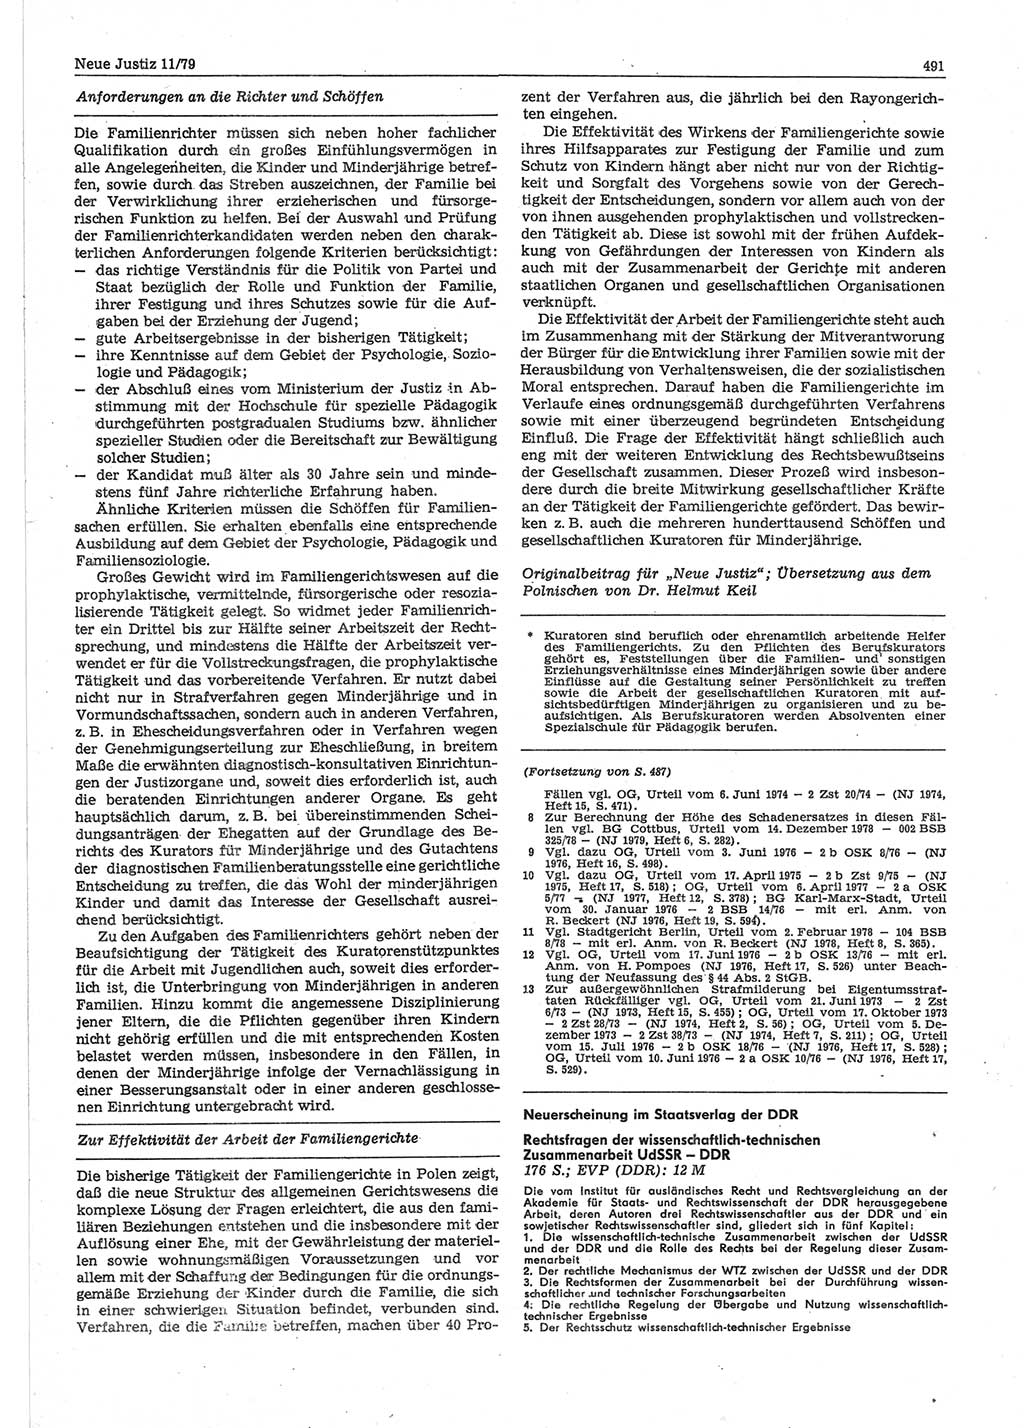 Neue Justiz (NJ), Zeitschrift für sozialistisches Recht und Gesetzlichkeit [Deutsche Demokratische Republik (DDR)], 33. Jahrgang 1979, Seite 491 (NJ DDR 1979, S. 491)